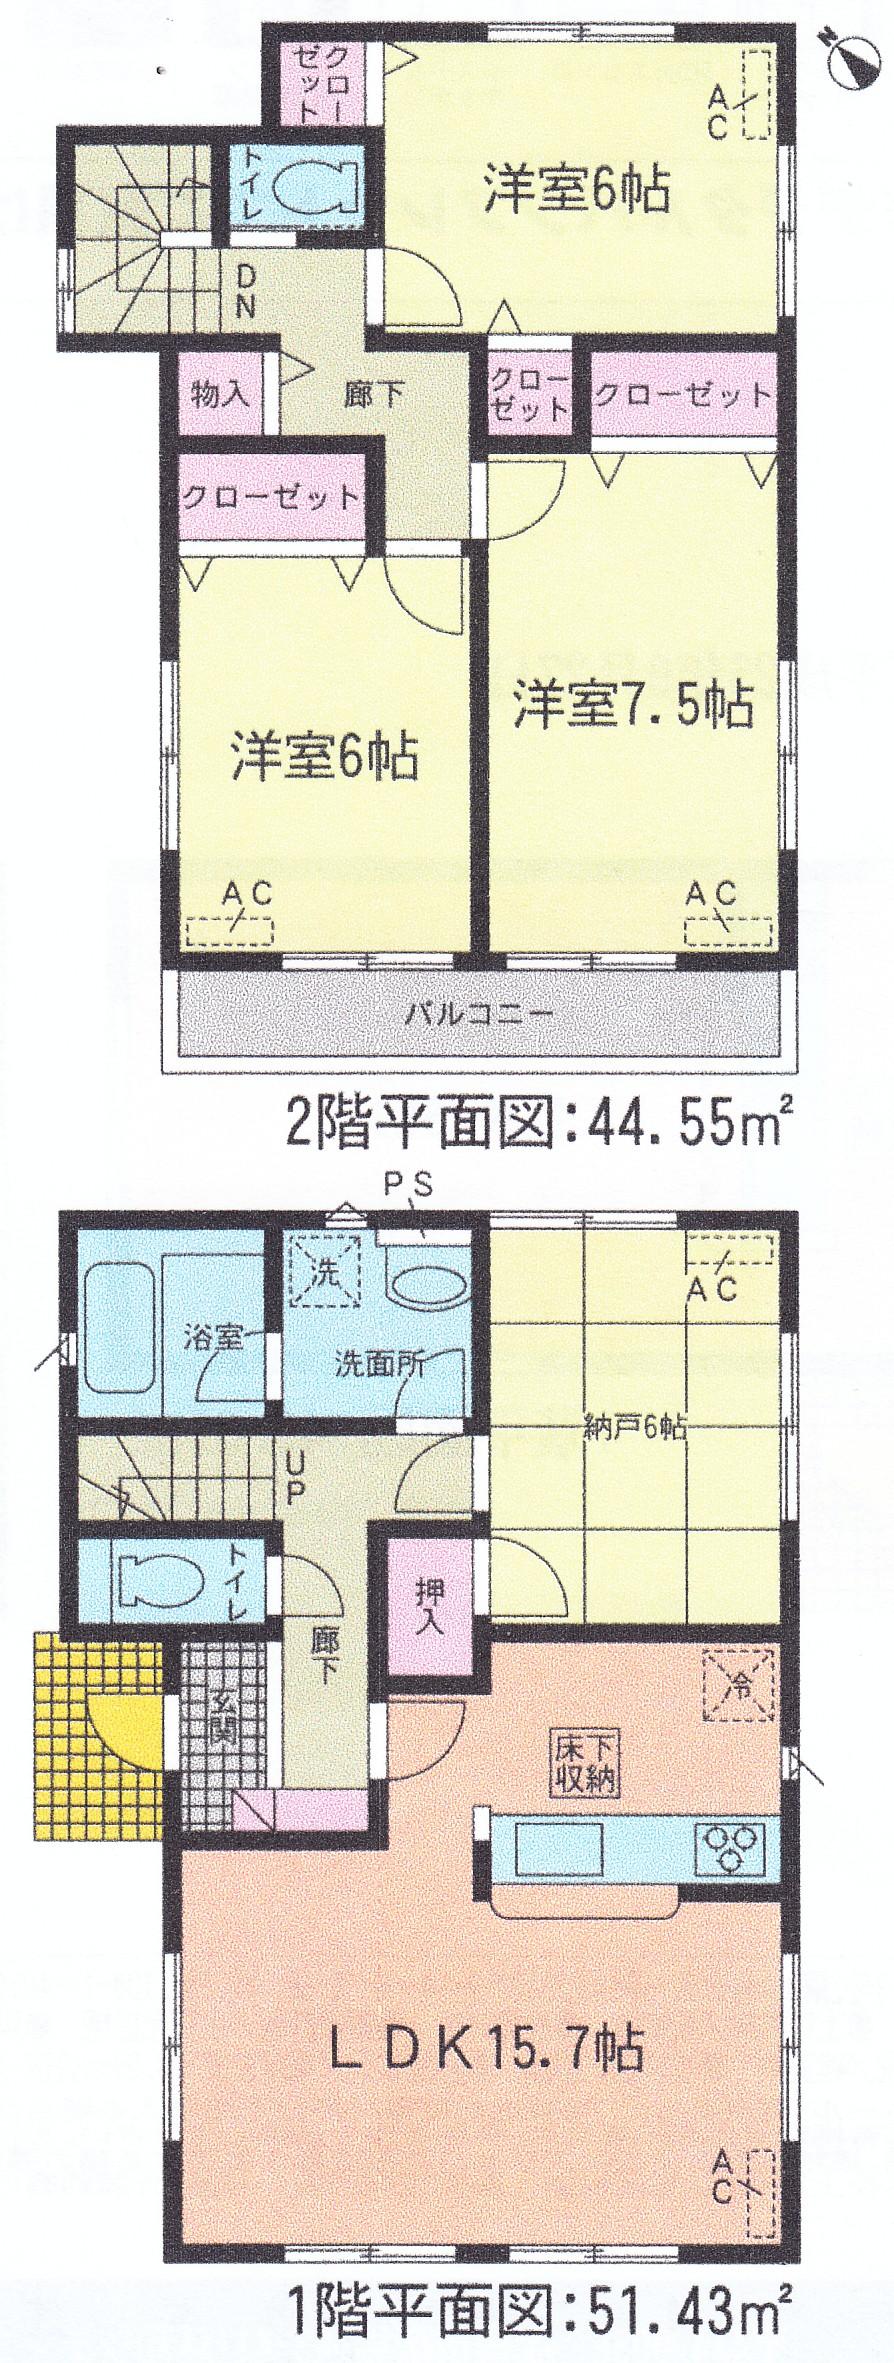 Floor plan. 28,900,000 yen, 3LDK + S (storeroom), Land area 117.53 sq m , Building area 95.98 sq m